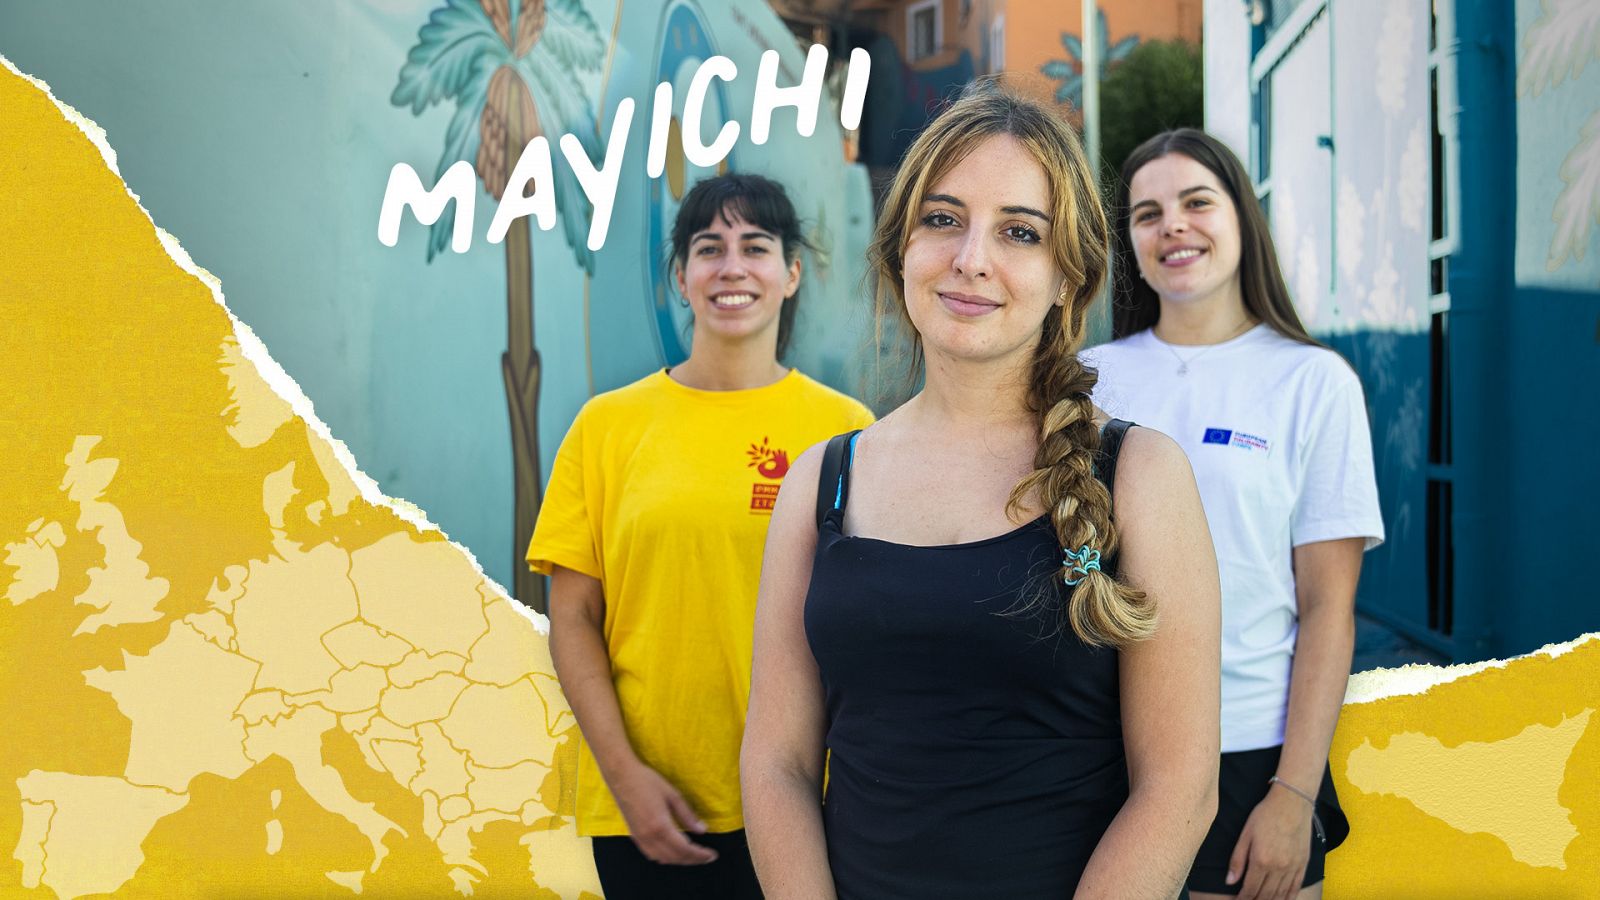 IN)Voluntarios - Programa 3: Mayichi de vountariado en Palermo - Ver ahora